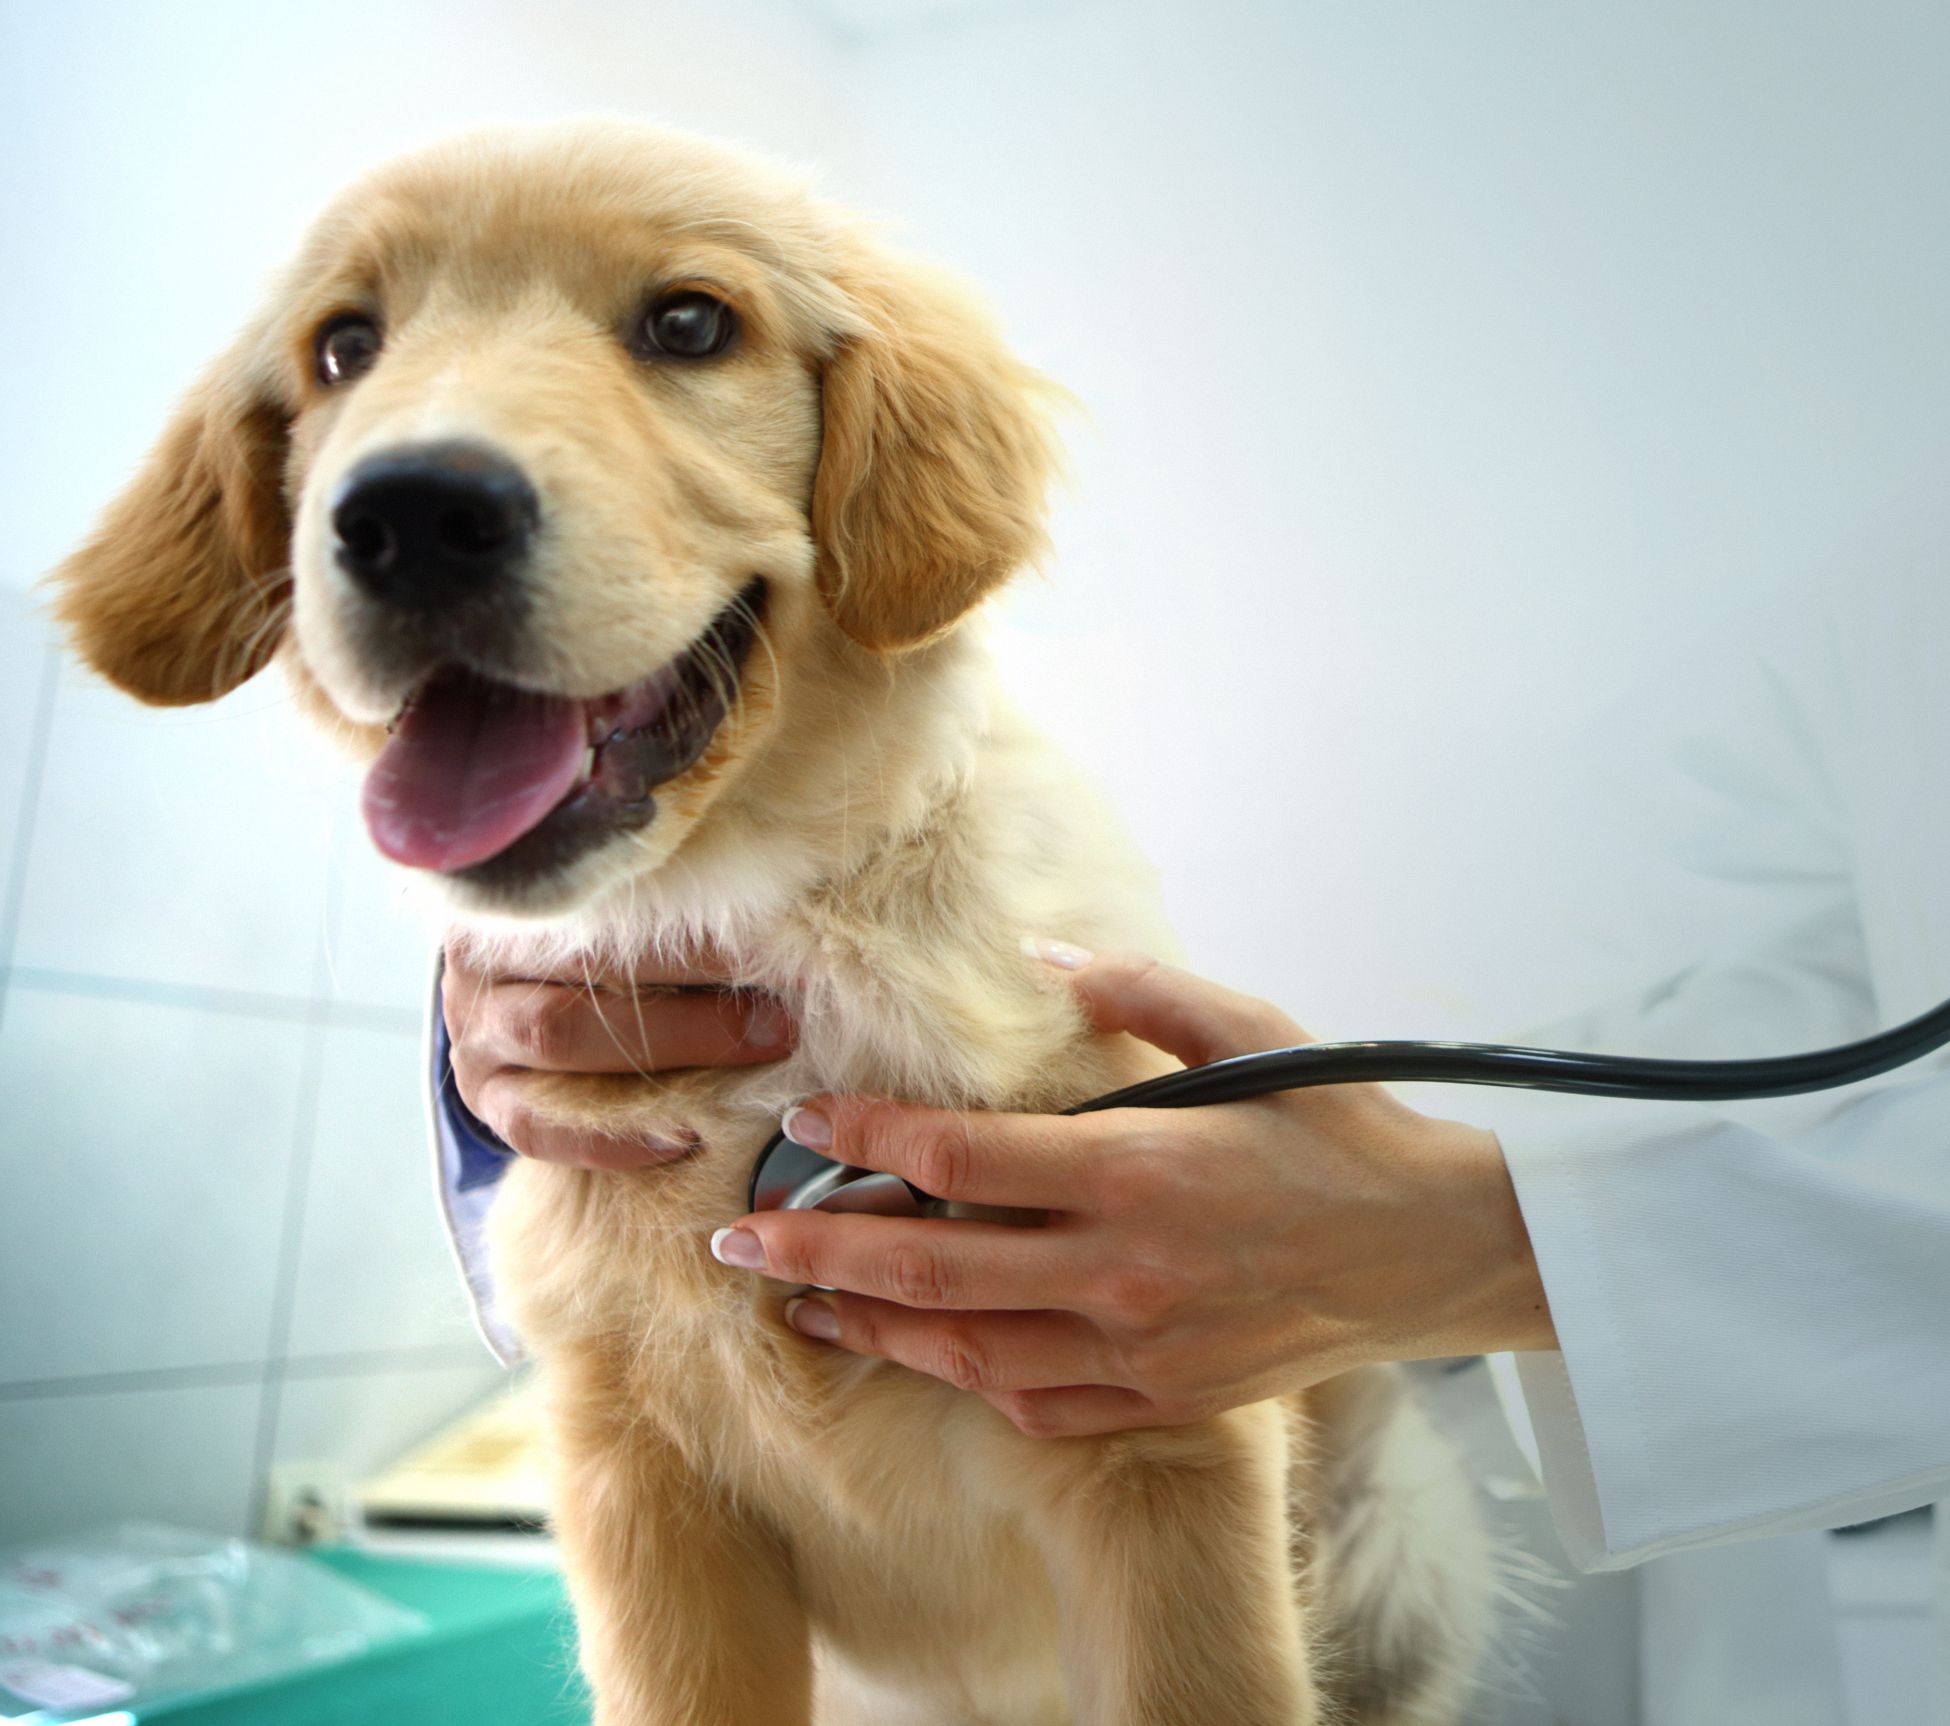 Puppy veterinarian visit. 